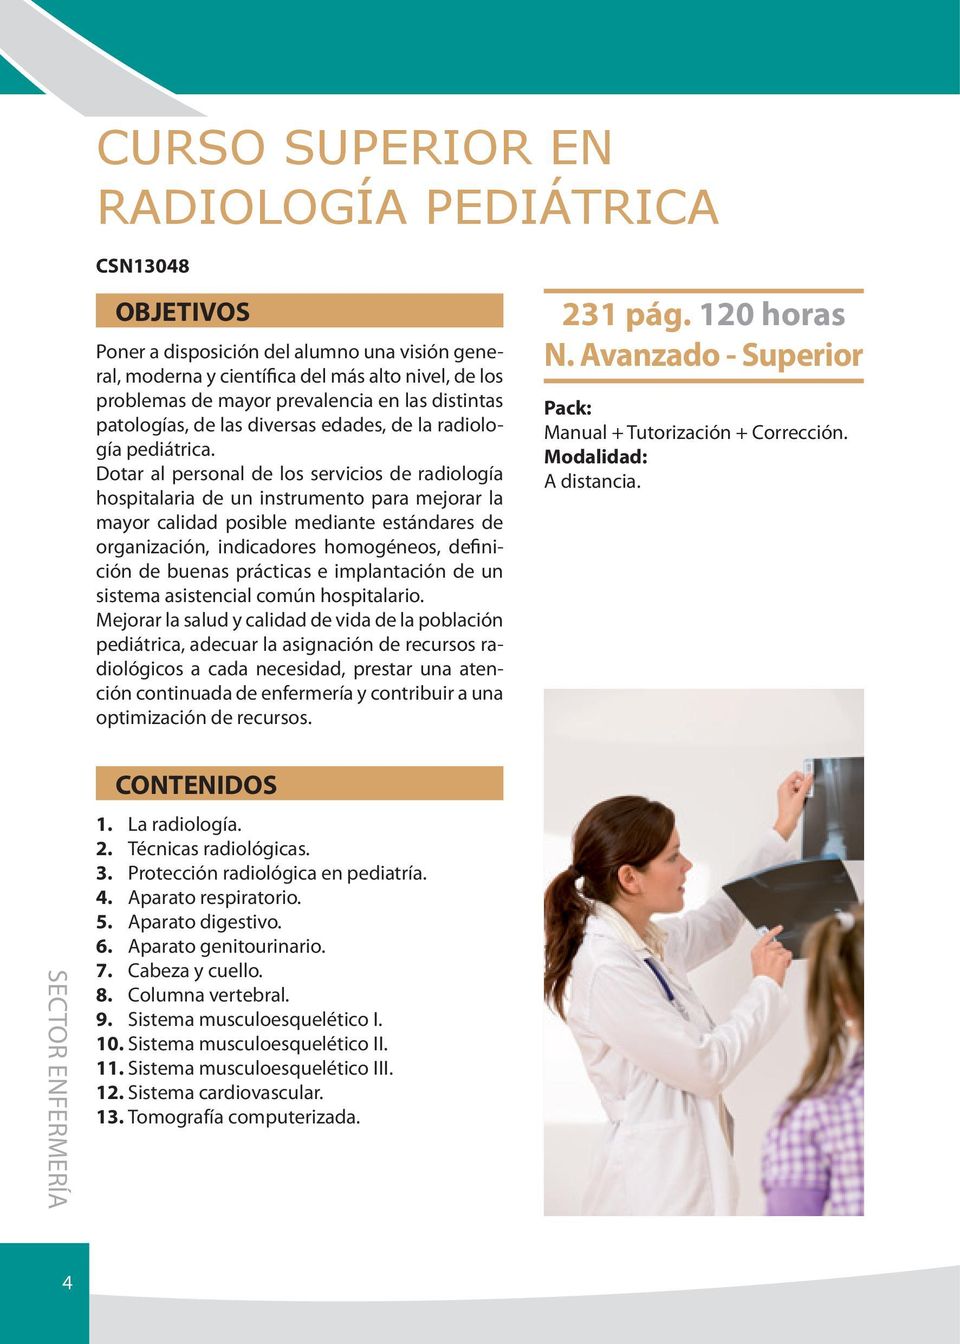 Dotar al personal de los servicios de radiología hospitalaria de un instrumento para mejorar la mayor calidad posible mediante estándares de organización, indicadores homogéneos, definición de buenas